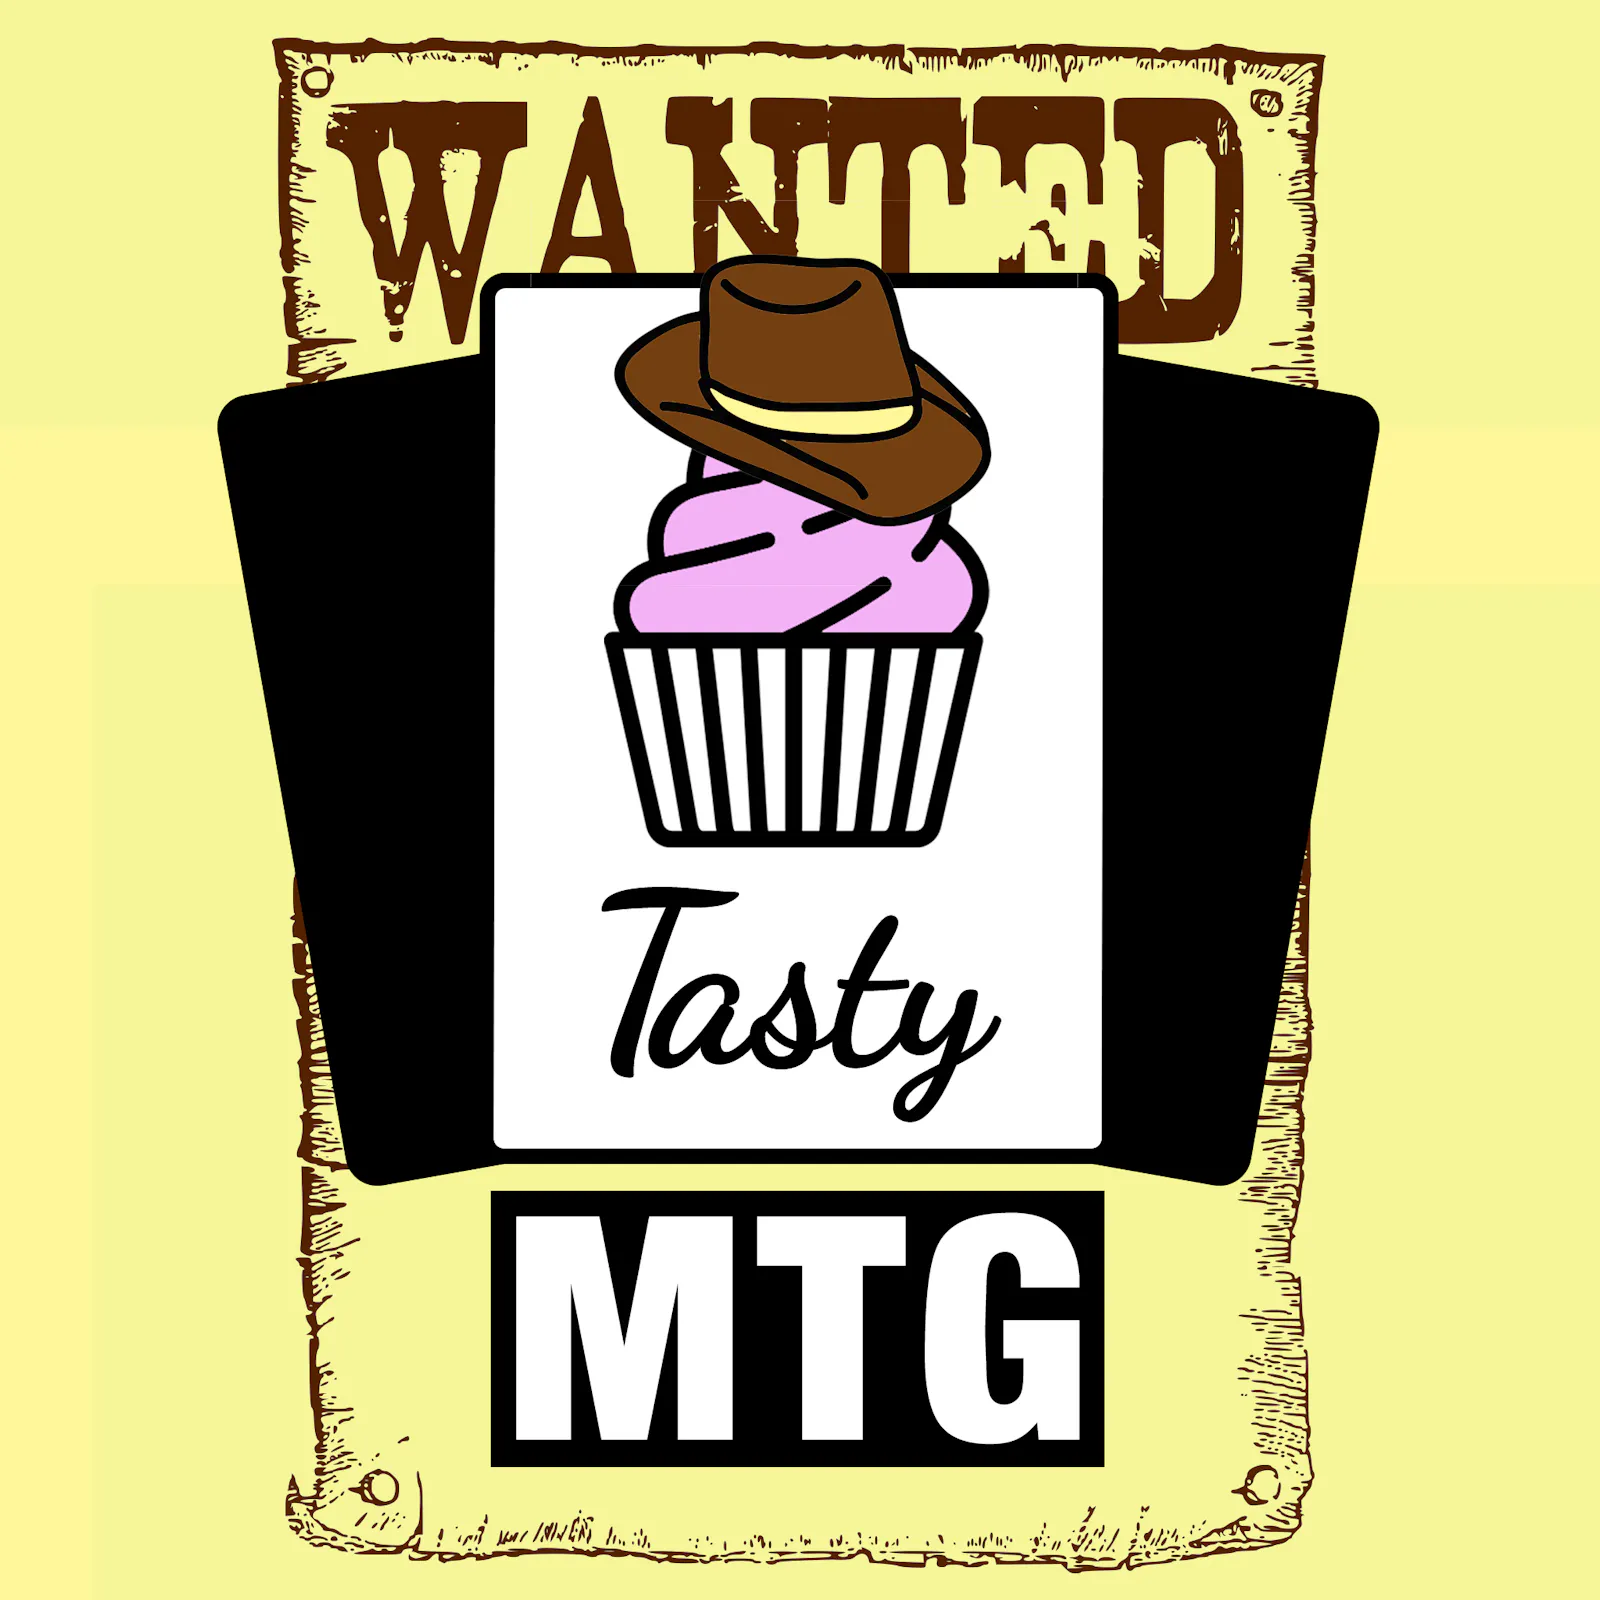 Das Cover zur neuen Episode: Der Tasty-Cupcake hat einen Cowboyhut auf und ist auf einem Wanted-Poster abgebildet.